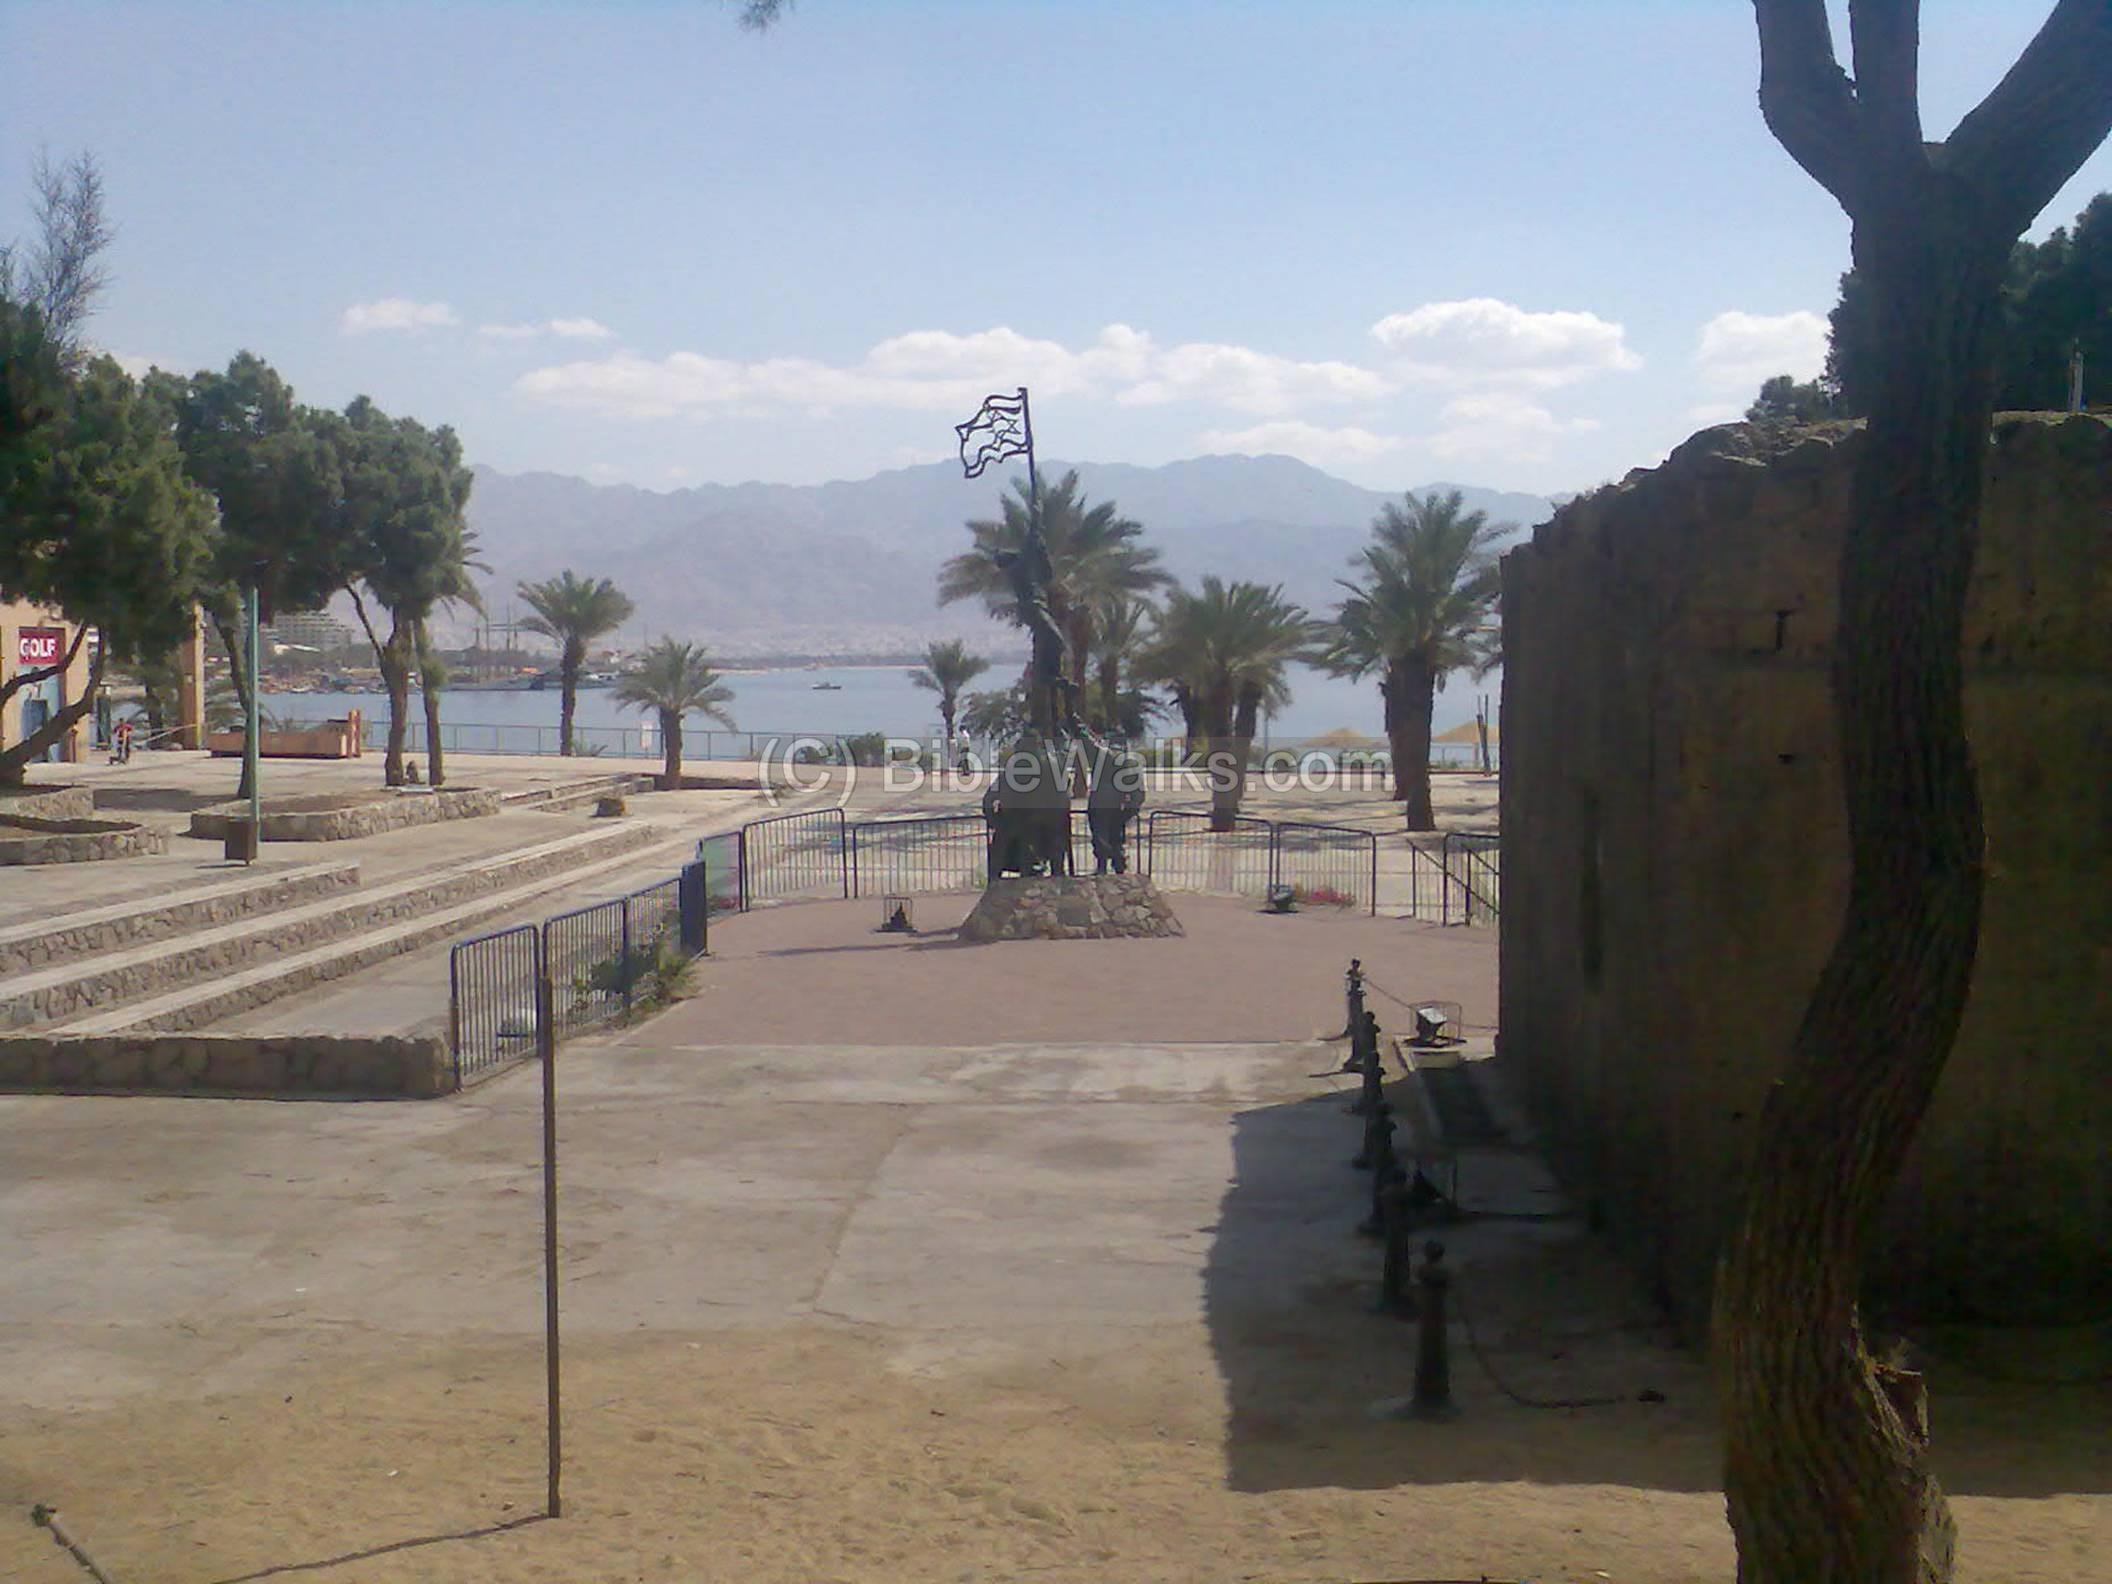 http://www.biblewalks.com/Photos33/Eilat2.jpg